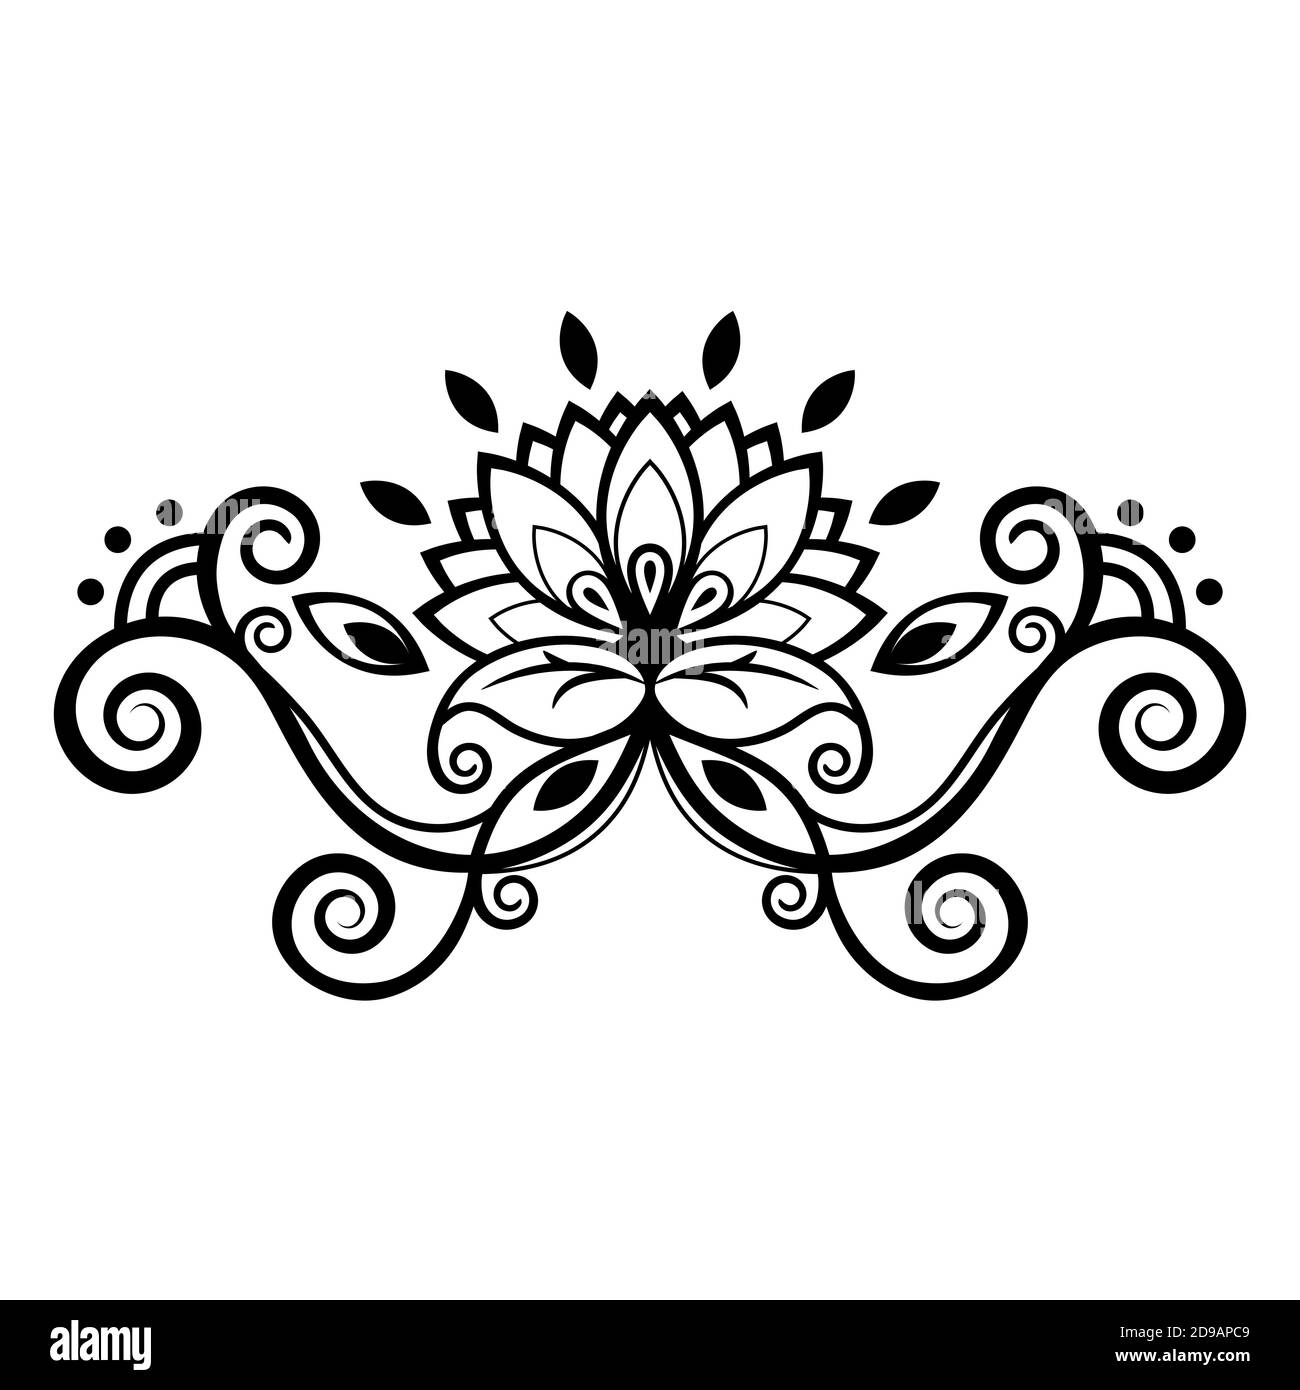 Abstraktes florales Ornament, ethnisches Muster, schwarz-weiße Zeichnung mit Locken, Spiralen, Blume, dekoratives Element, Druck, Tätowierung, Farbtracery Stock Vektor